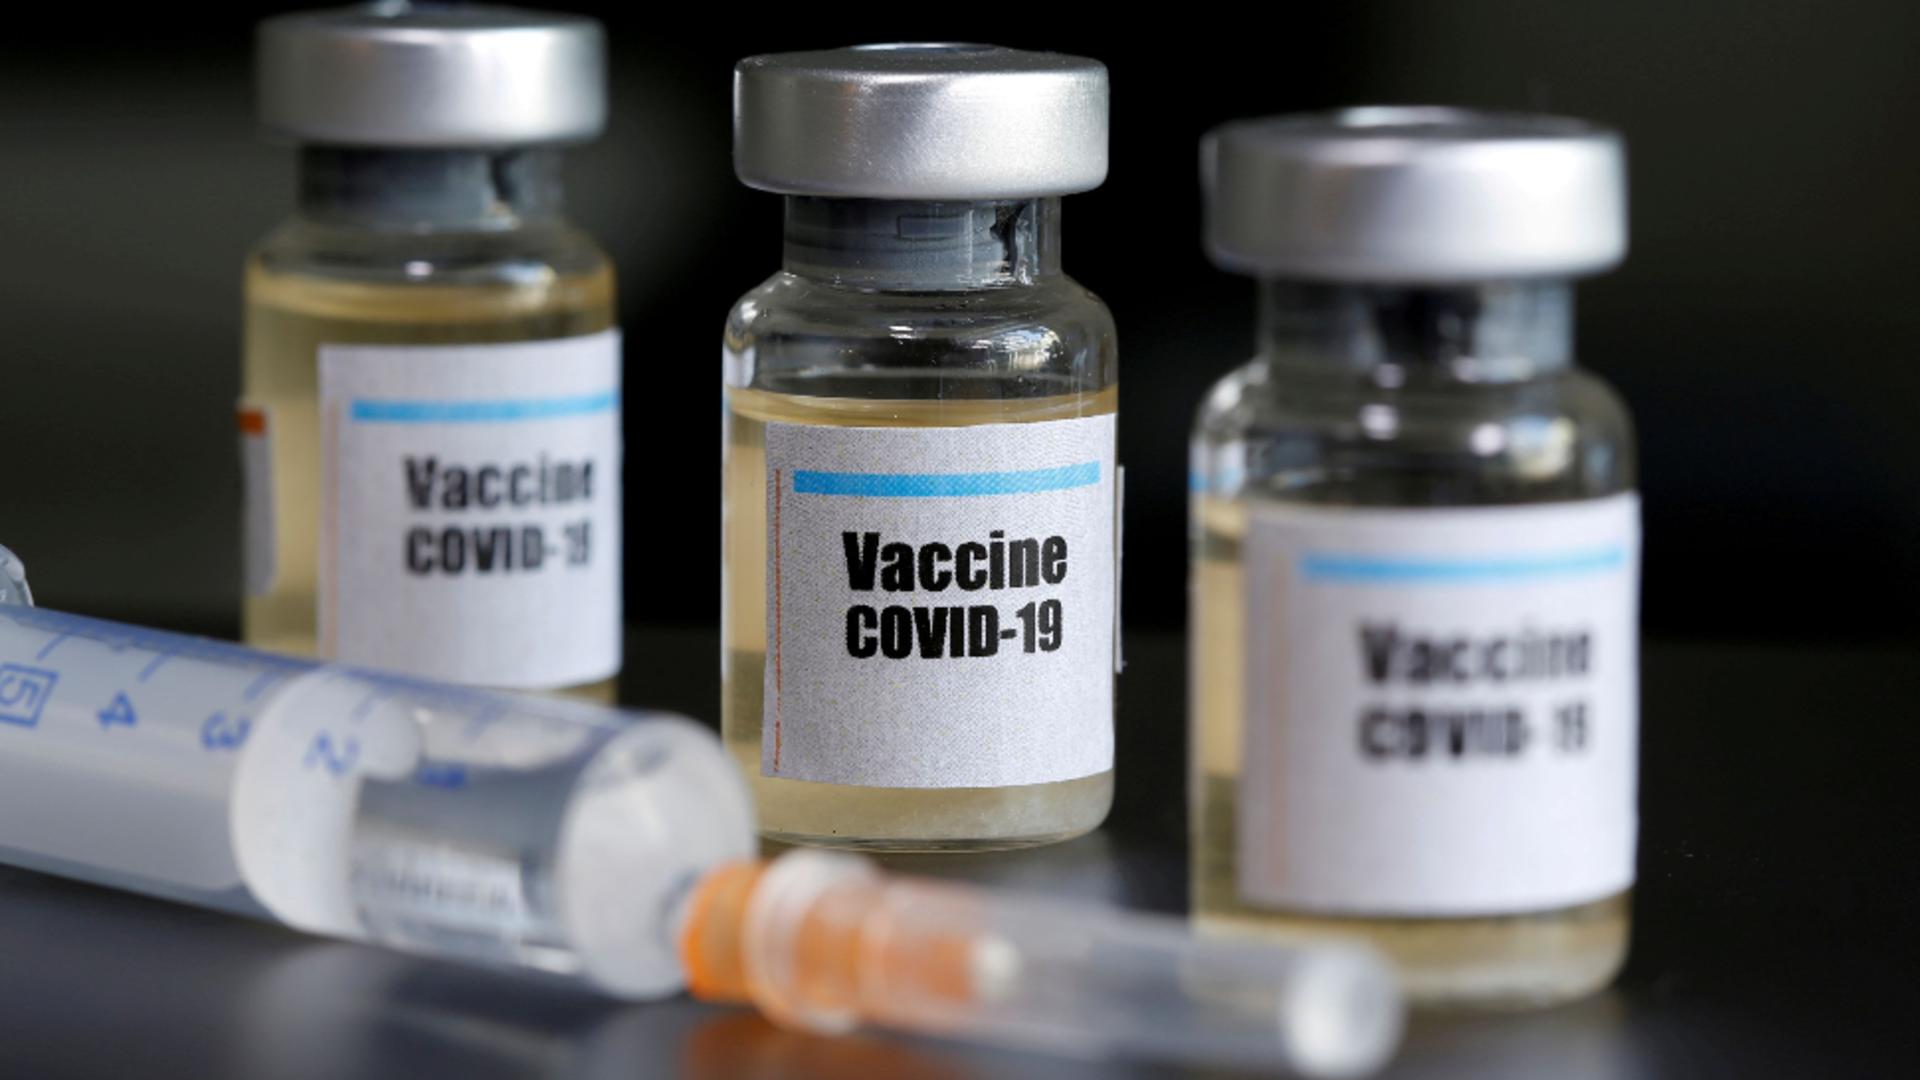 DEZASTRU! Eficacitatea vaccinului Astra/Zeneca împotriva variantei sud-africane a Covid-19 este de doar 10%